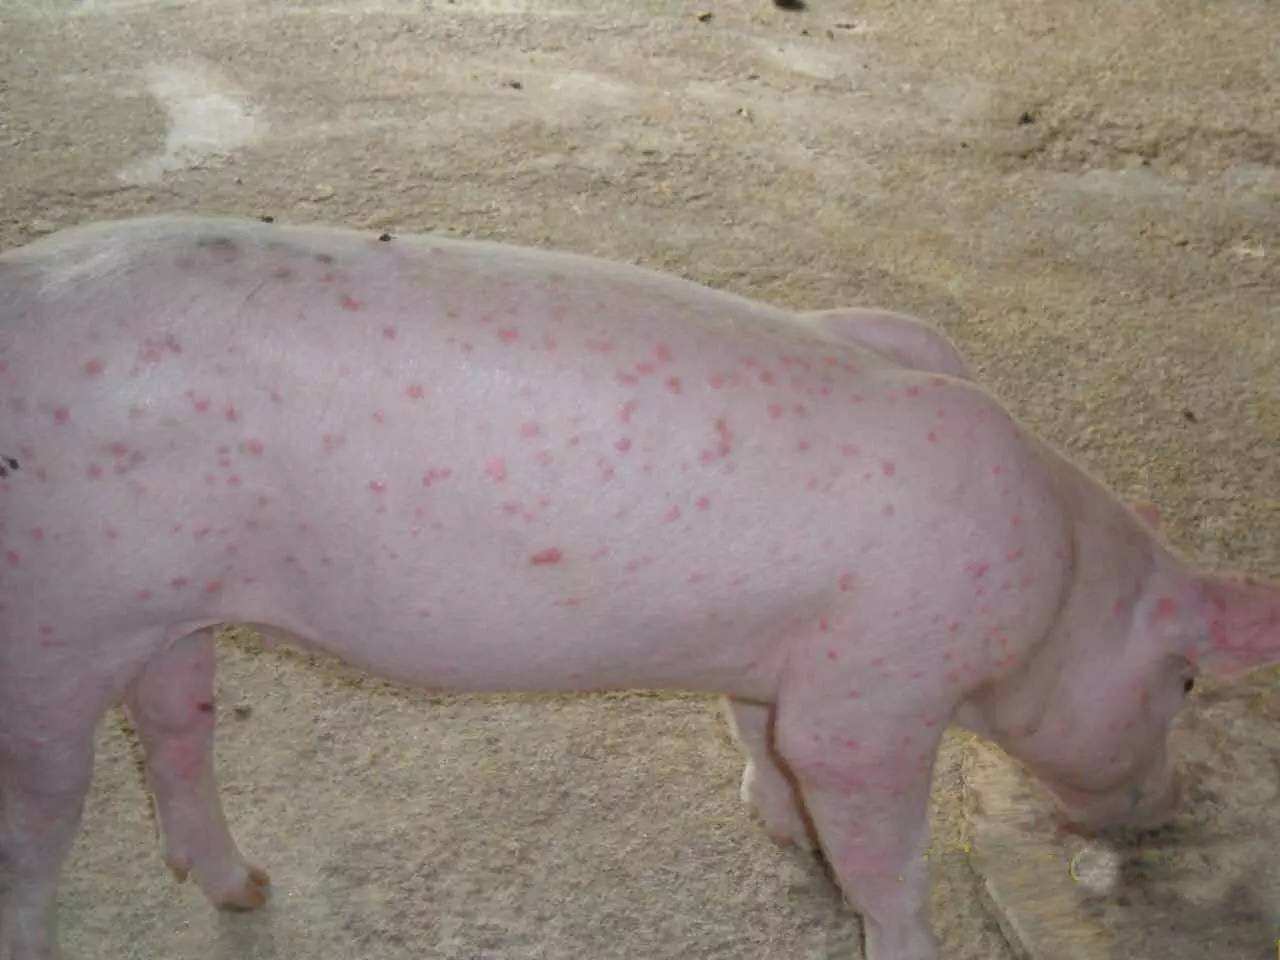 猪圆环病毒引起的皮炎肾病综合征临床症状图片